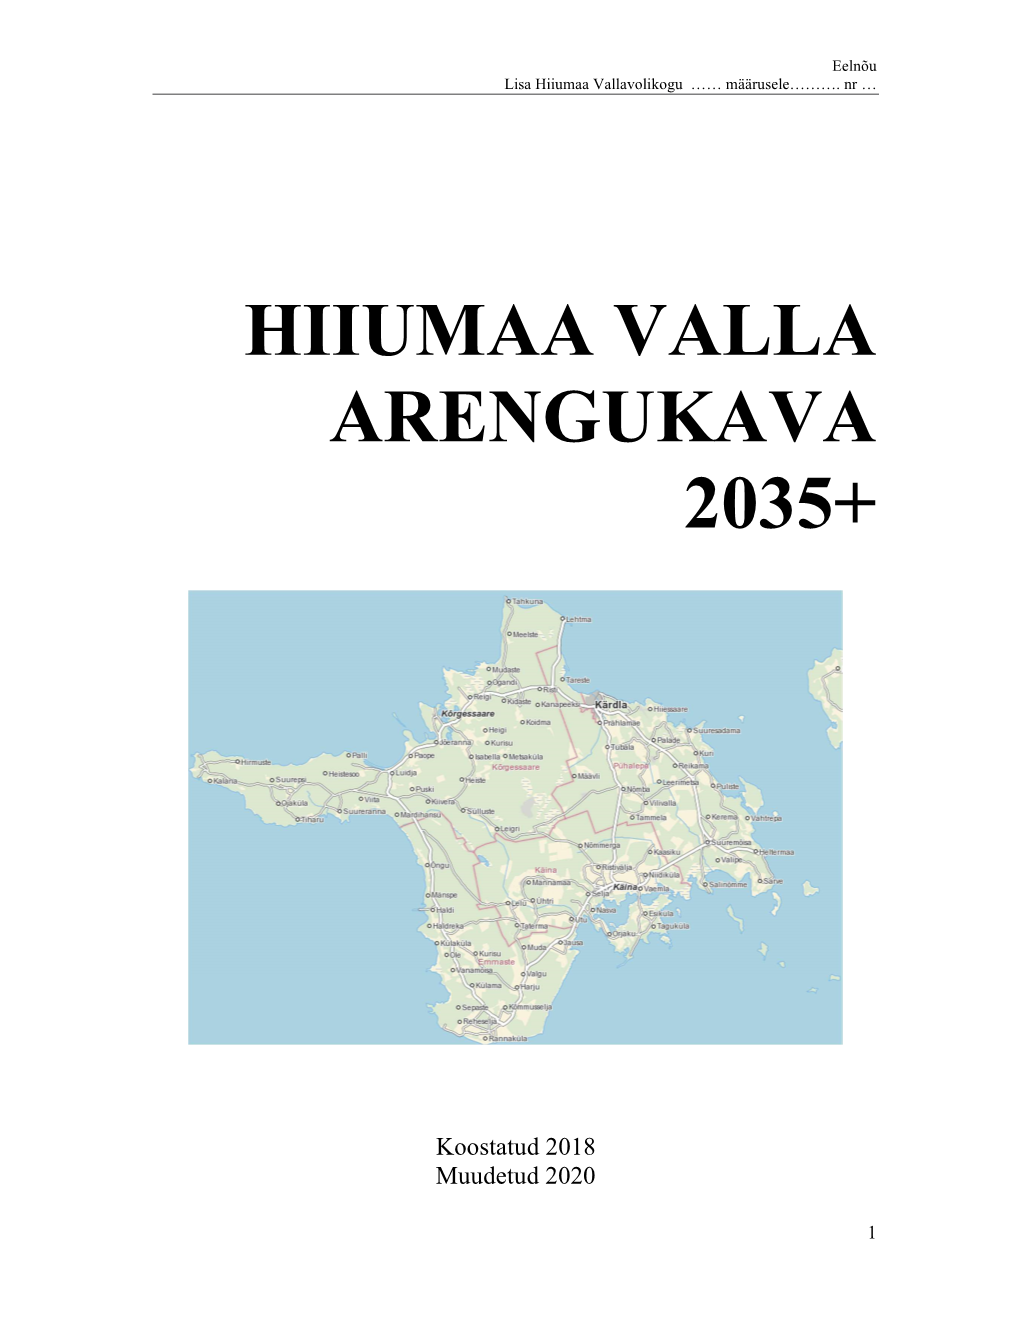 Hiiumaa Valla Arengukava 2035+